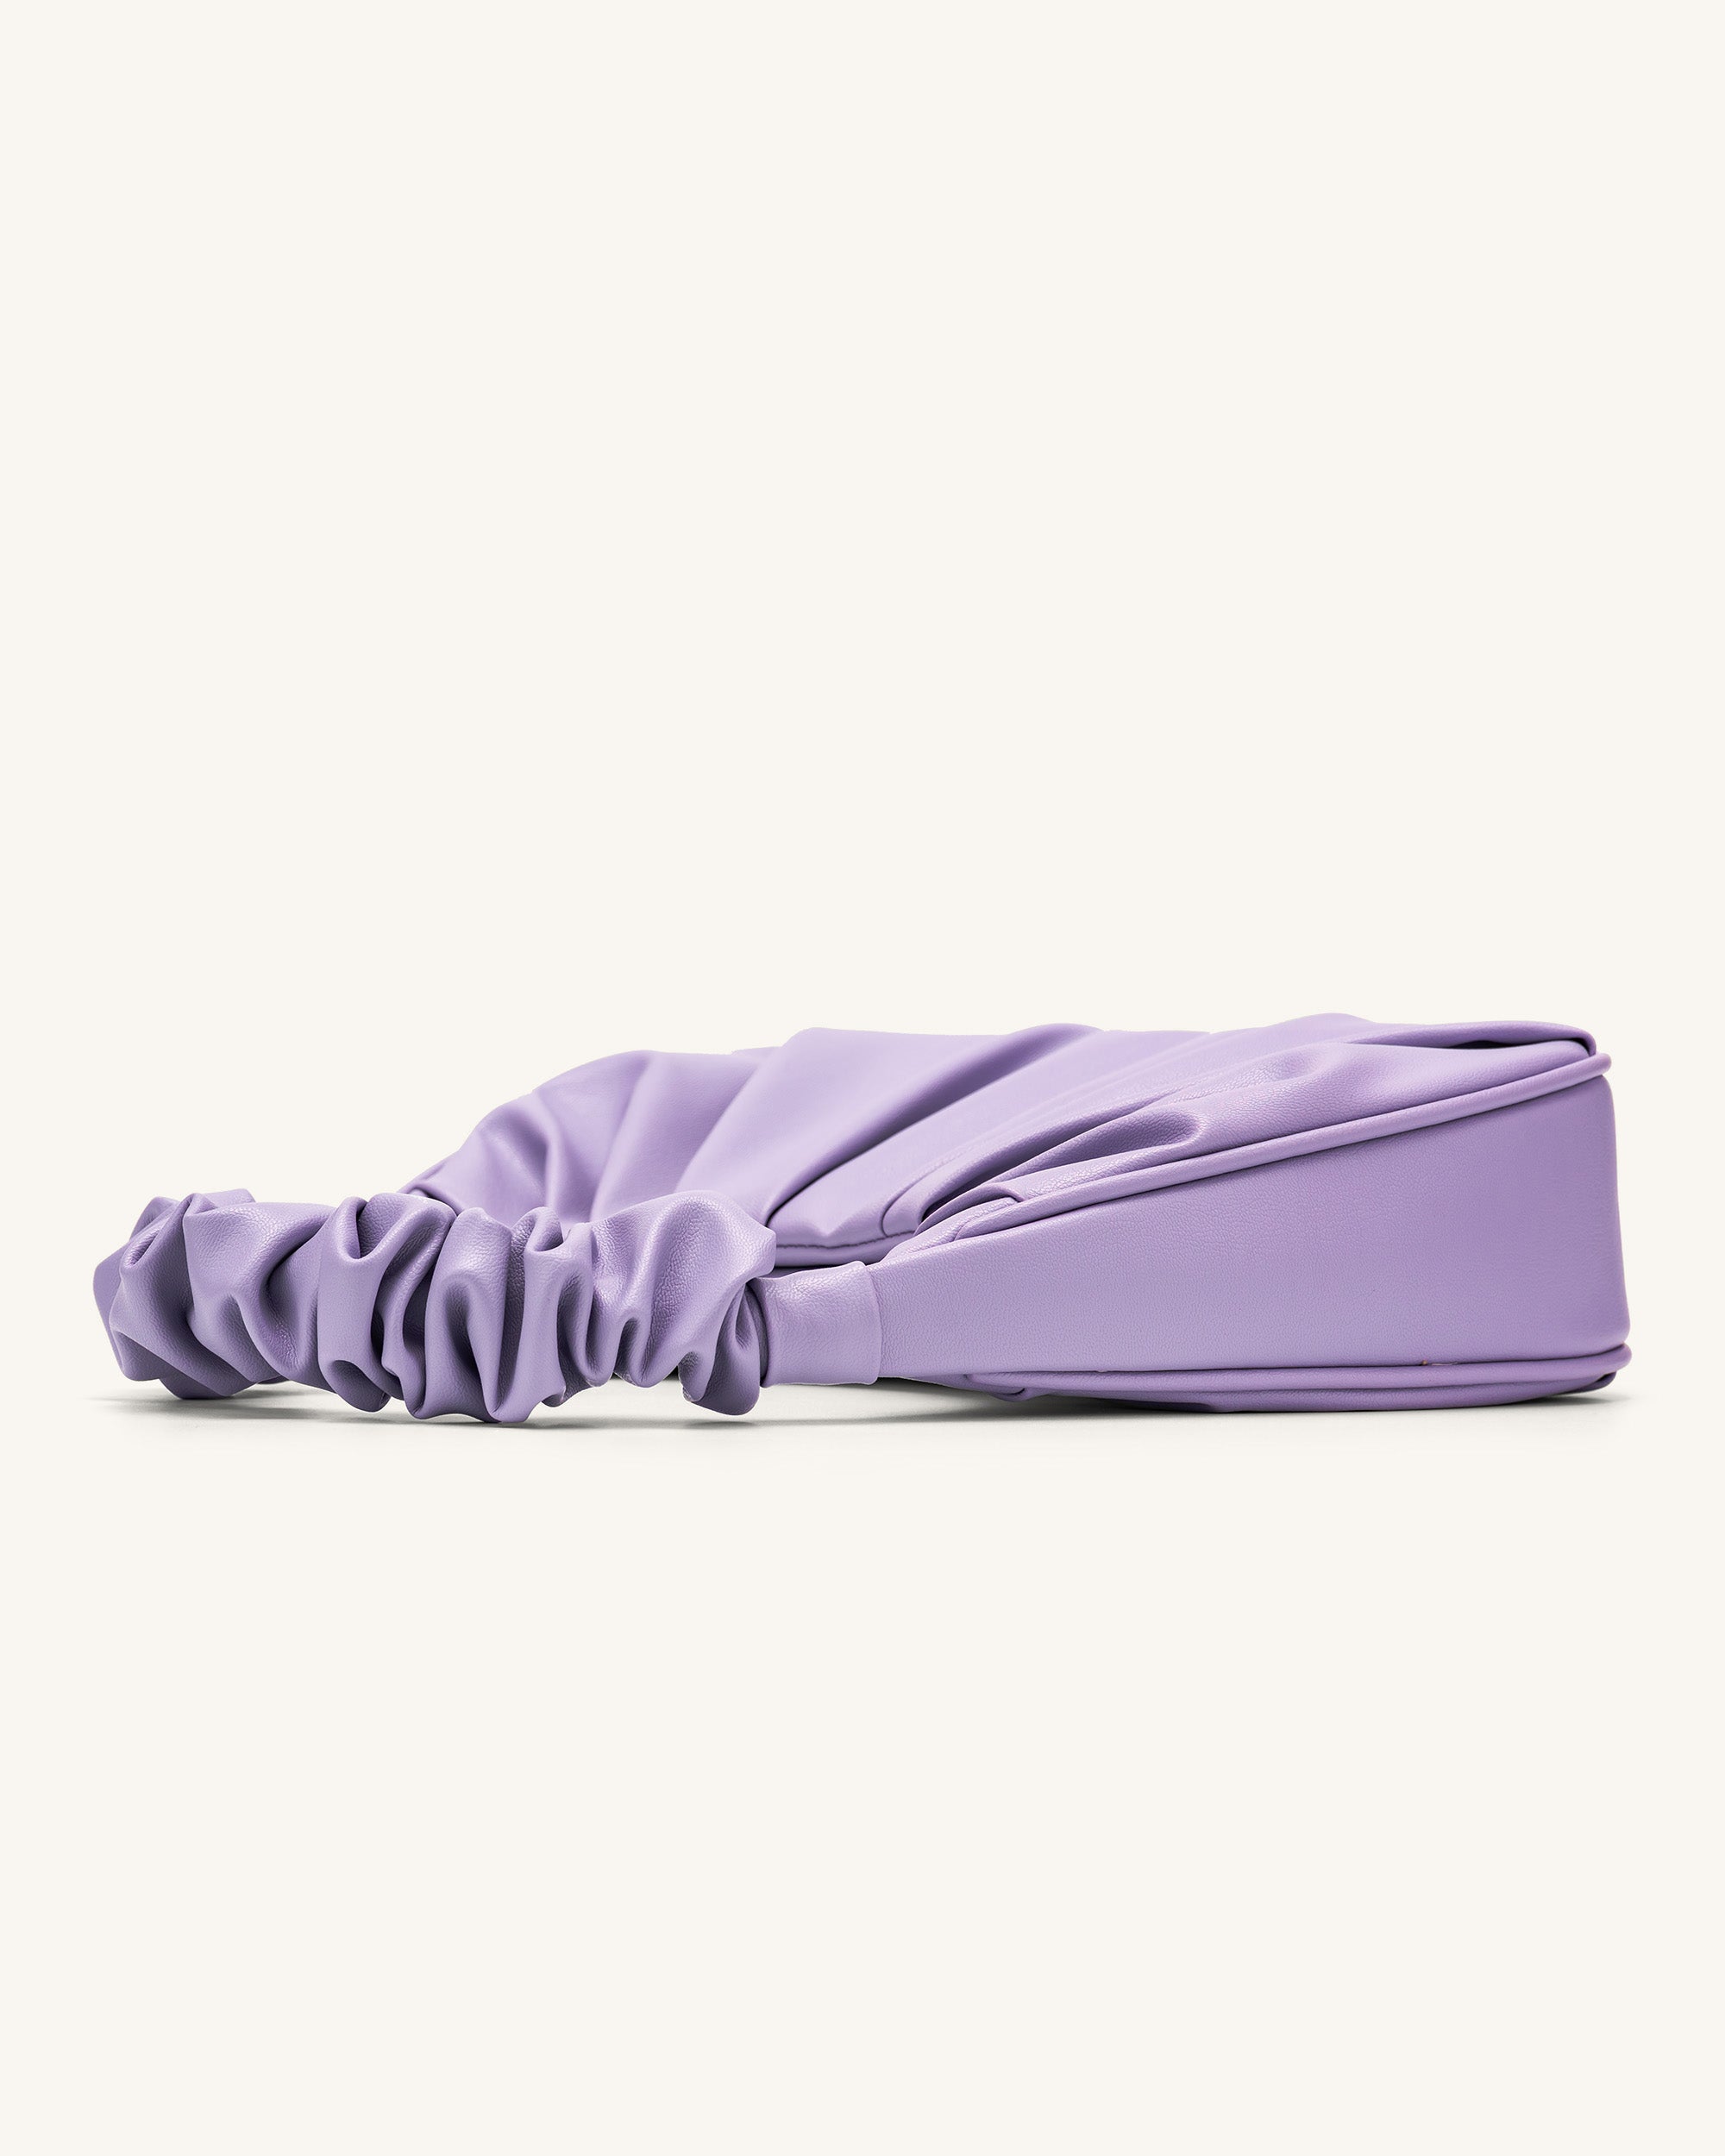 Jual JW PEI gabbi bag - purple - Jakarta Utara - Crownie_shop